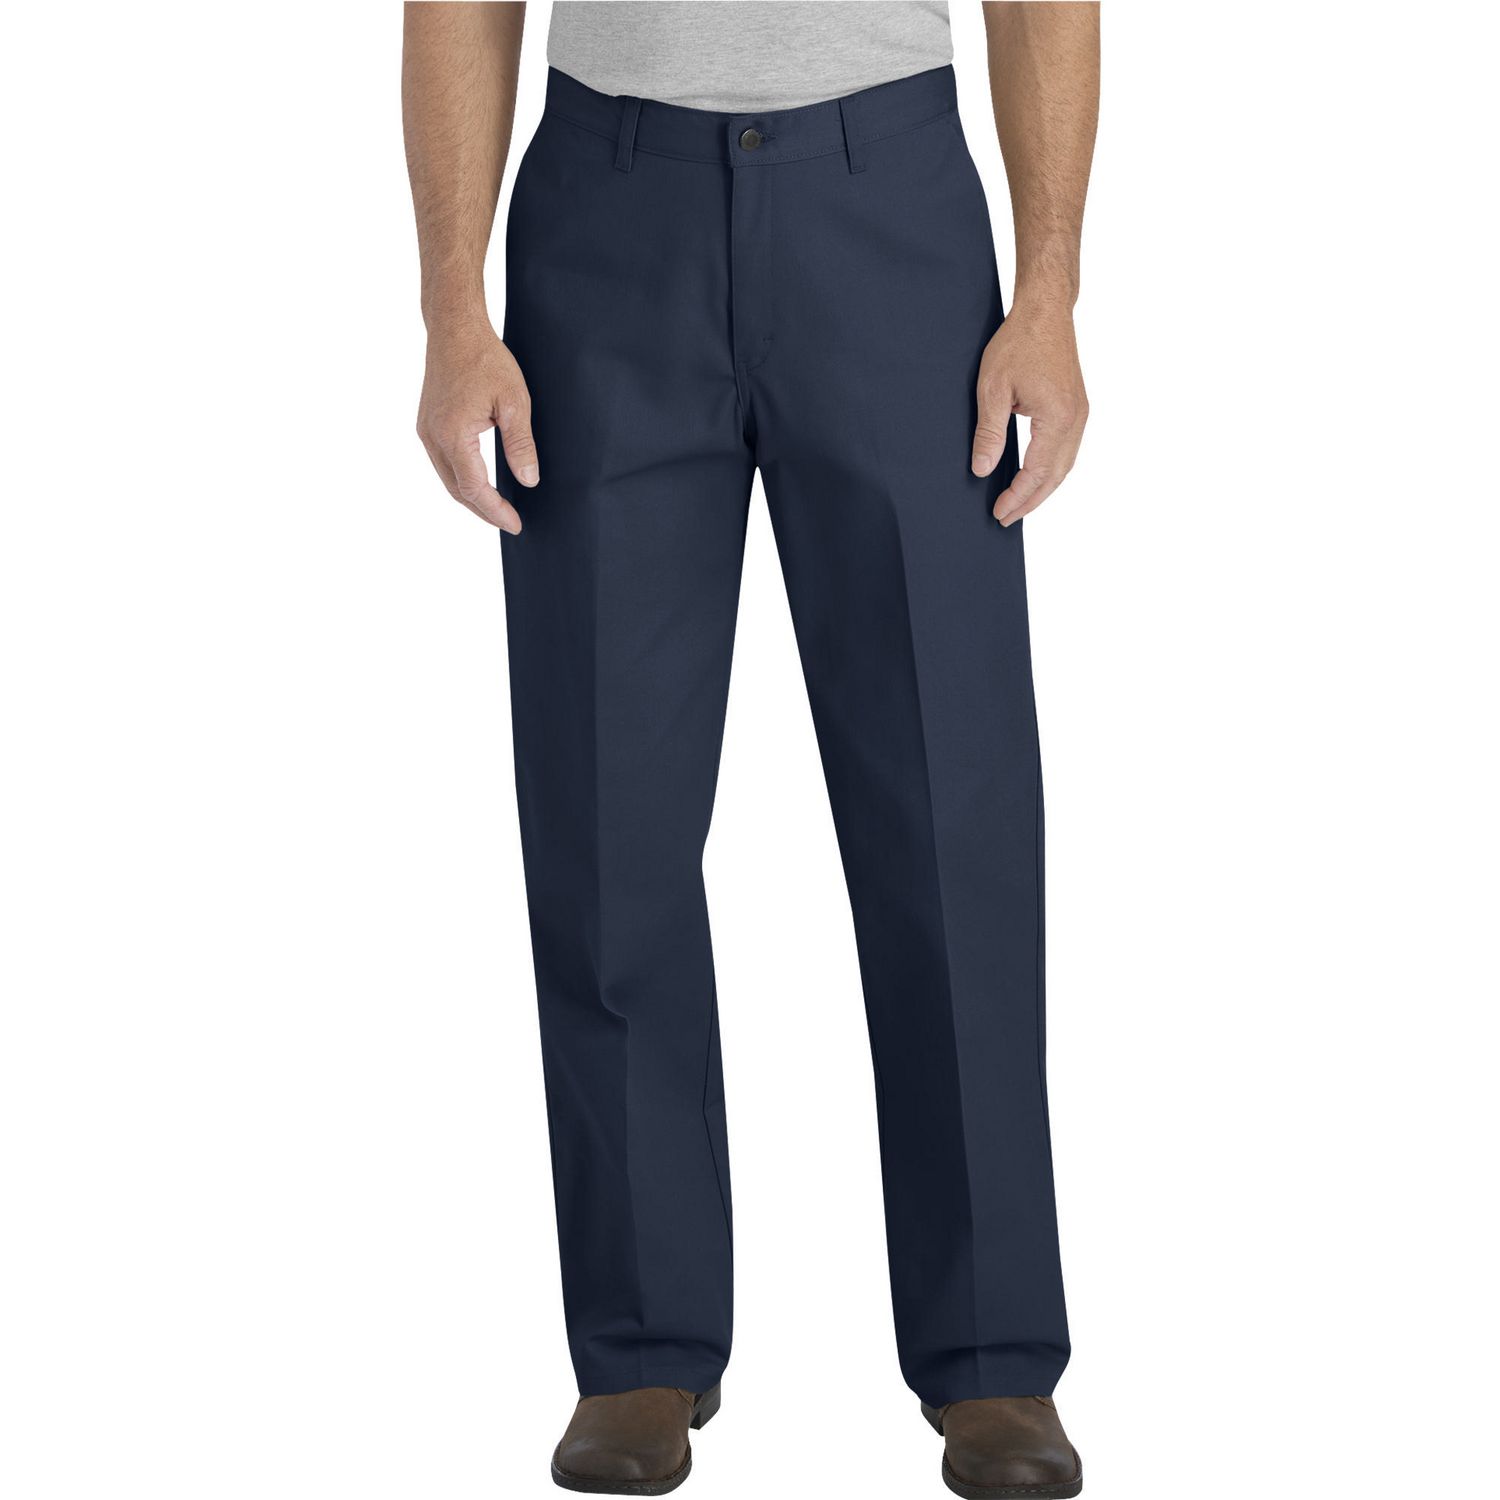 Genuine Dickies Flat Front Pant | Walmart Canada